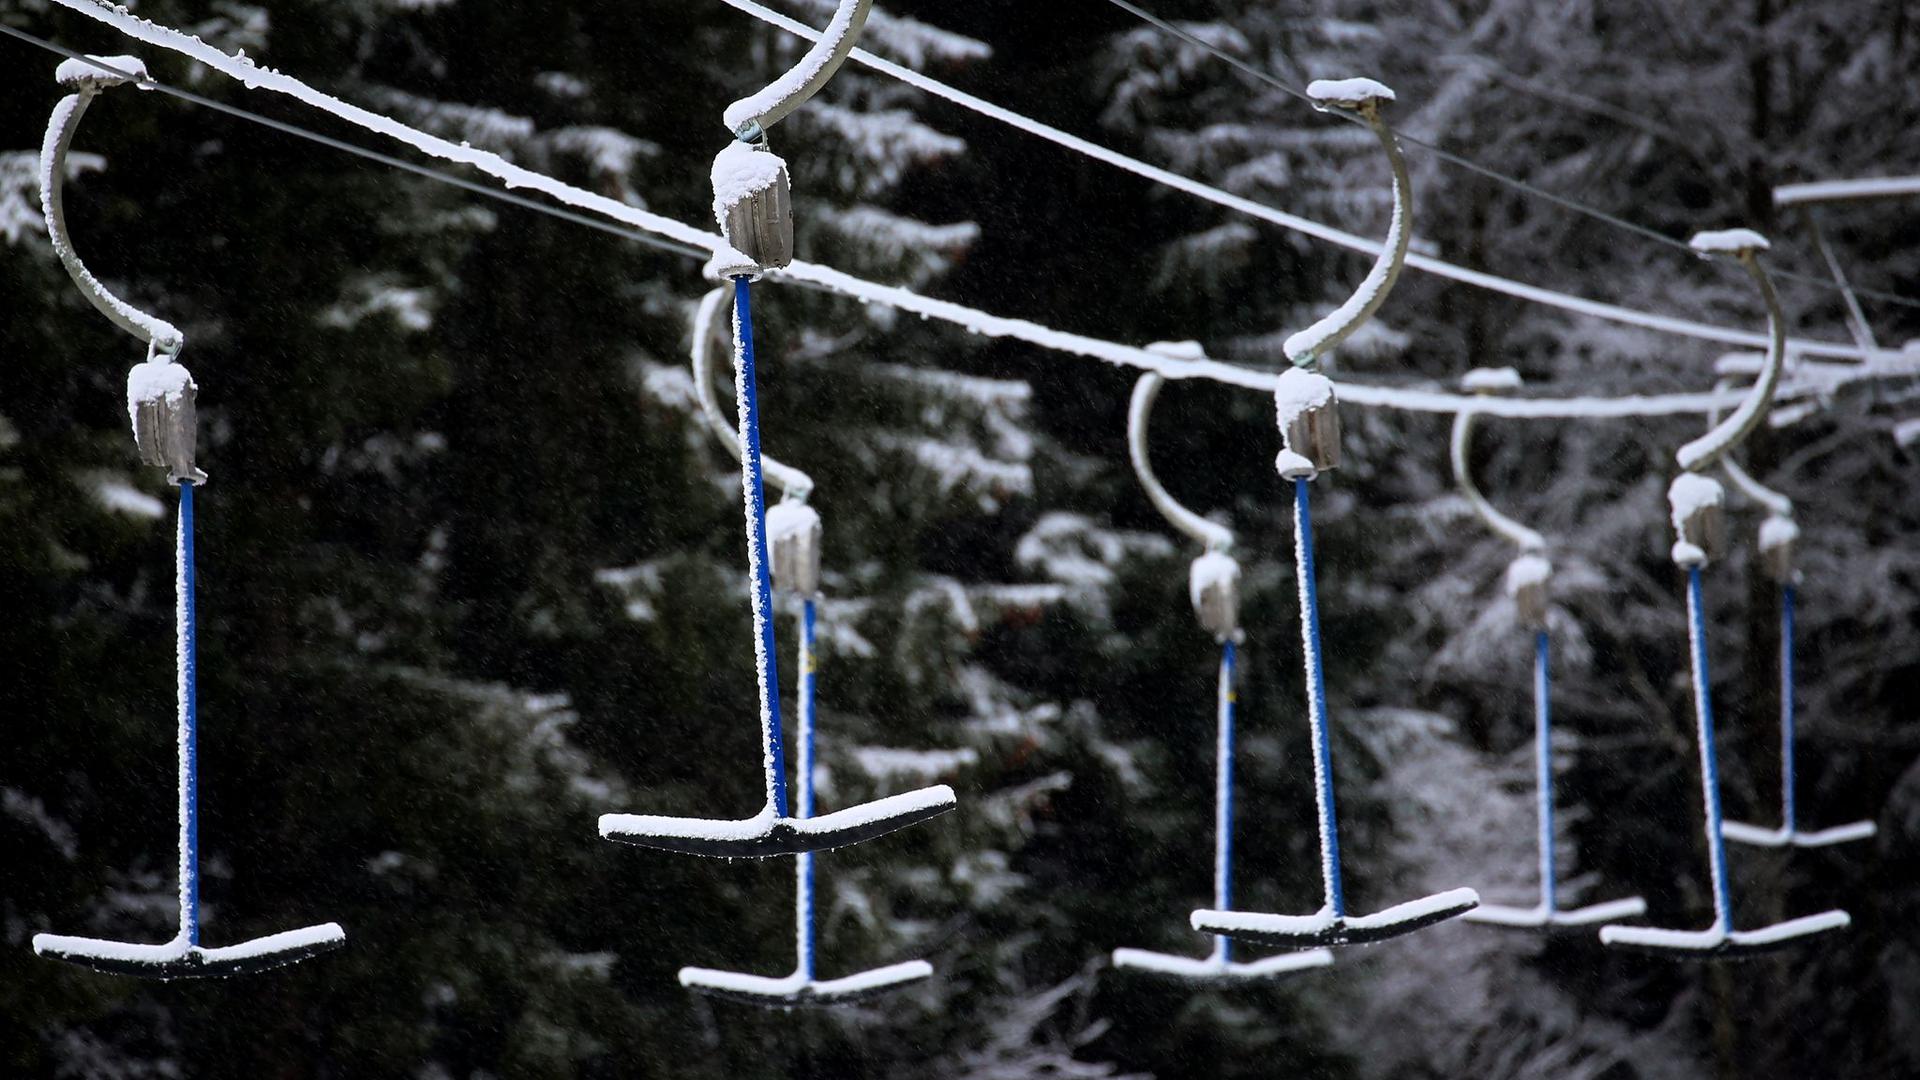 Bügel eines Schleppliftes hängen in schneebedeckter Landschaft. Wegen der Maßnahmen um das Coronavirus müssen Skilifte geschlossen bleiben.